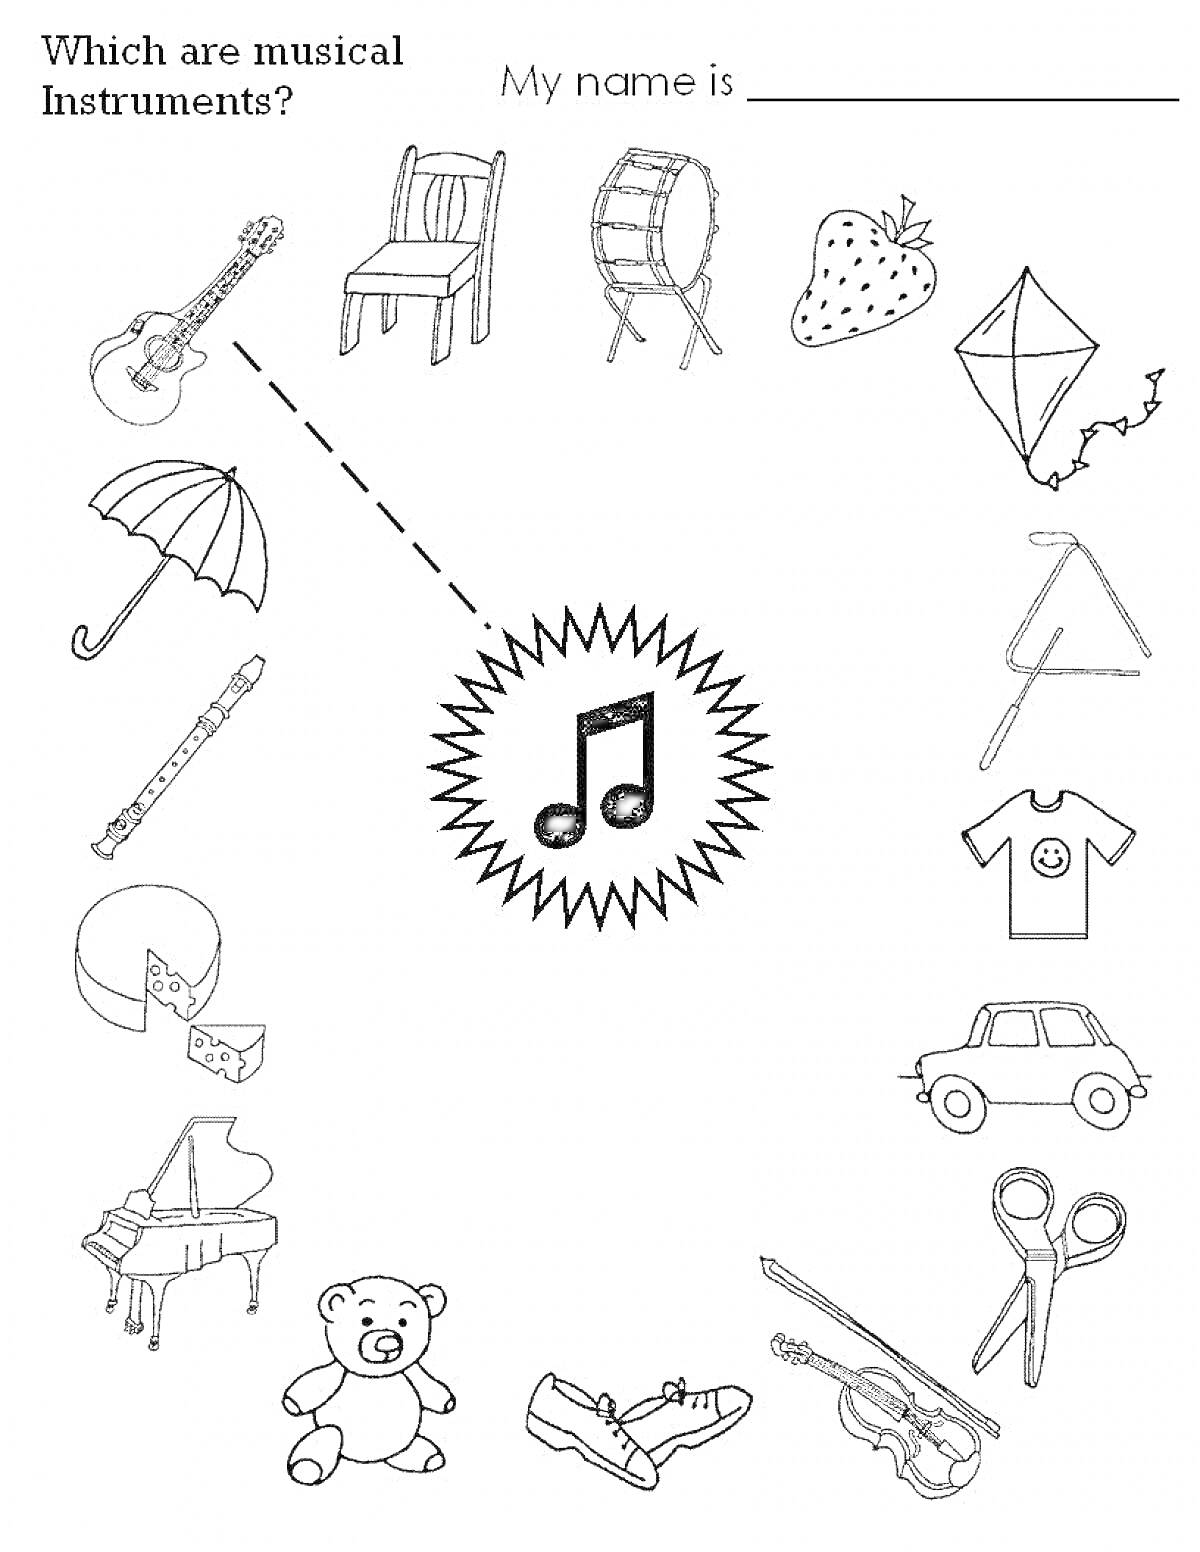 Раскраска Раскраска с музыкальными инструментами, среди которых гитара, труба в виде рожка, тарелки, барабан, треугольник, пианино и ноты.